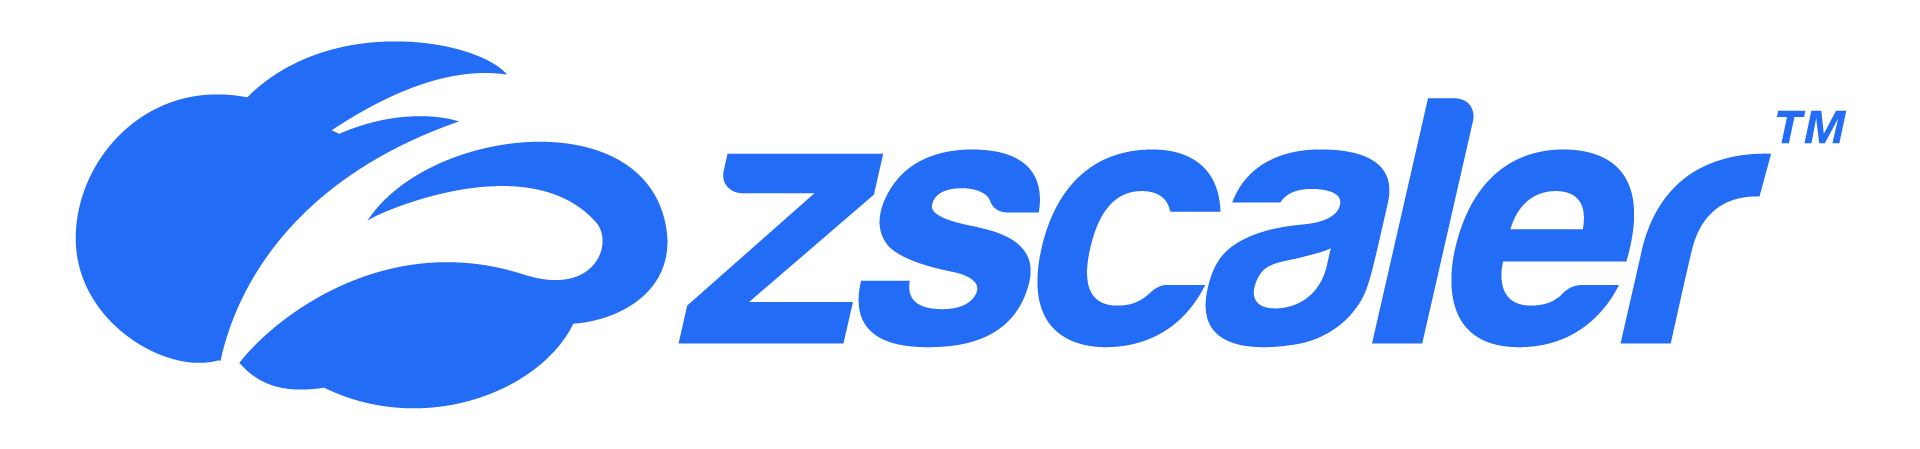 Zscaler_BrandAssets_LogoLockup_Blue.png